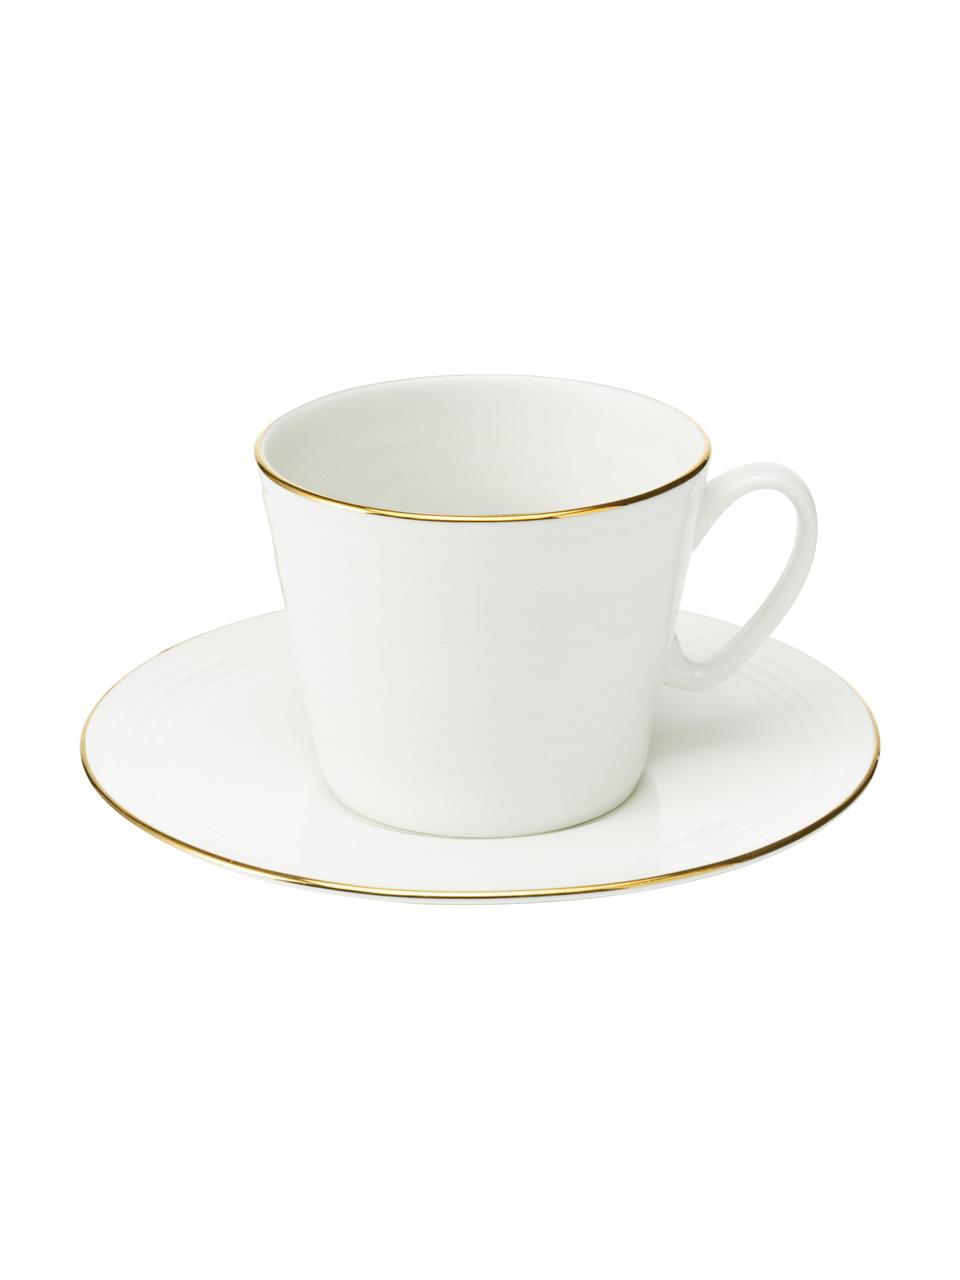 Tazza da caffè Cobald 4 pz, Porcellana, Bianco, dorato, Ø 9 x Alt. 8 cm